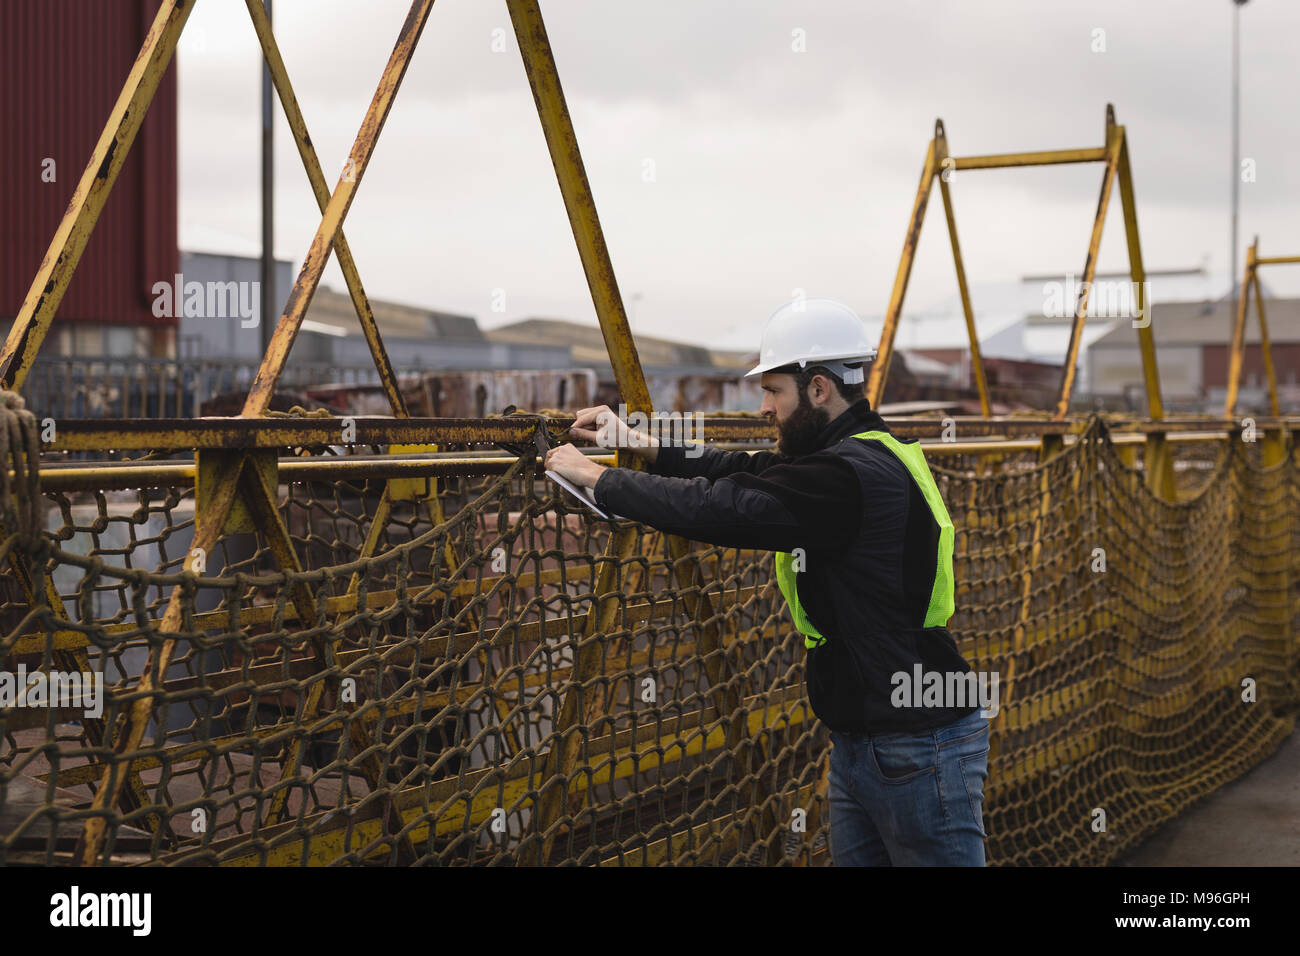 Dock worker adjusting net Stock Photo